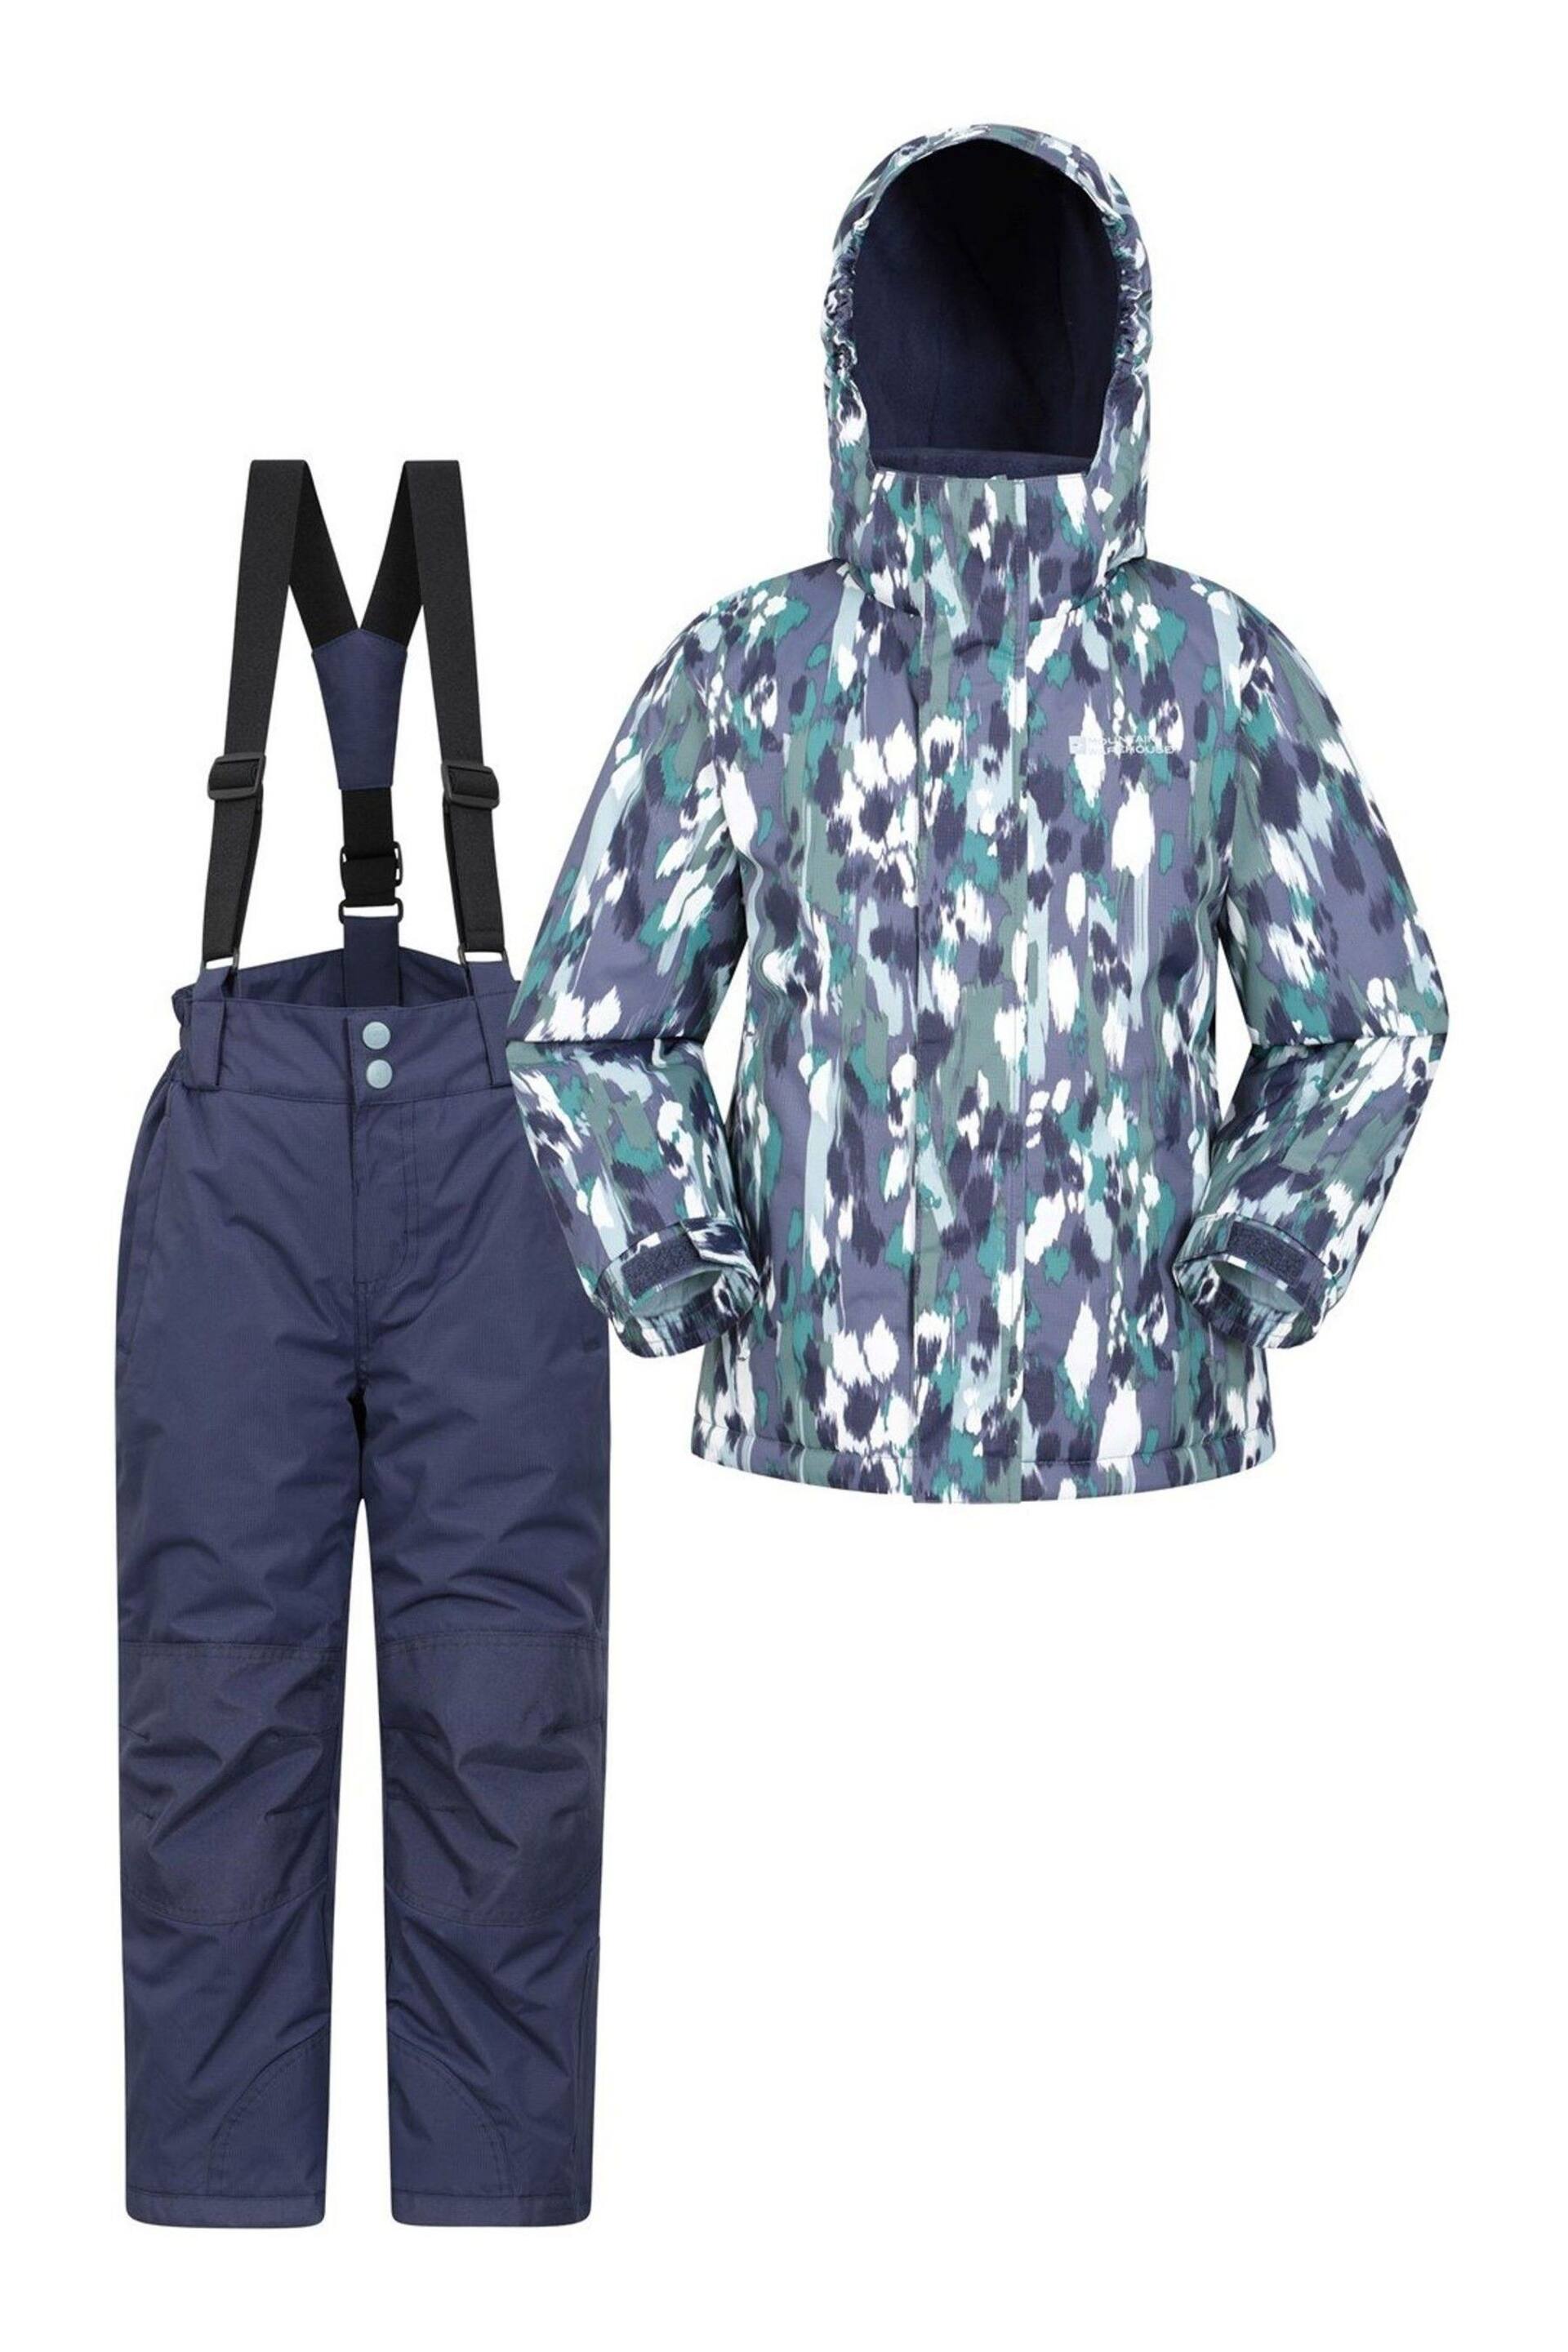 Mountain Warehouse Khaki Green Ski Jacket And Trouser Set - Kids - Image 1 of 2